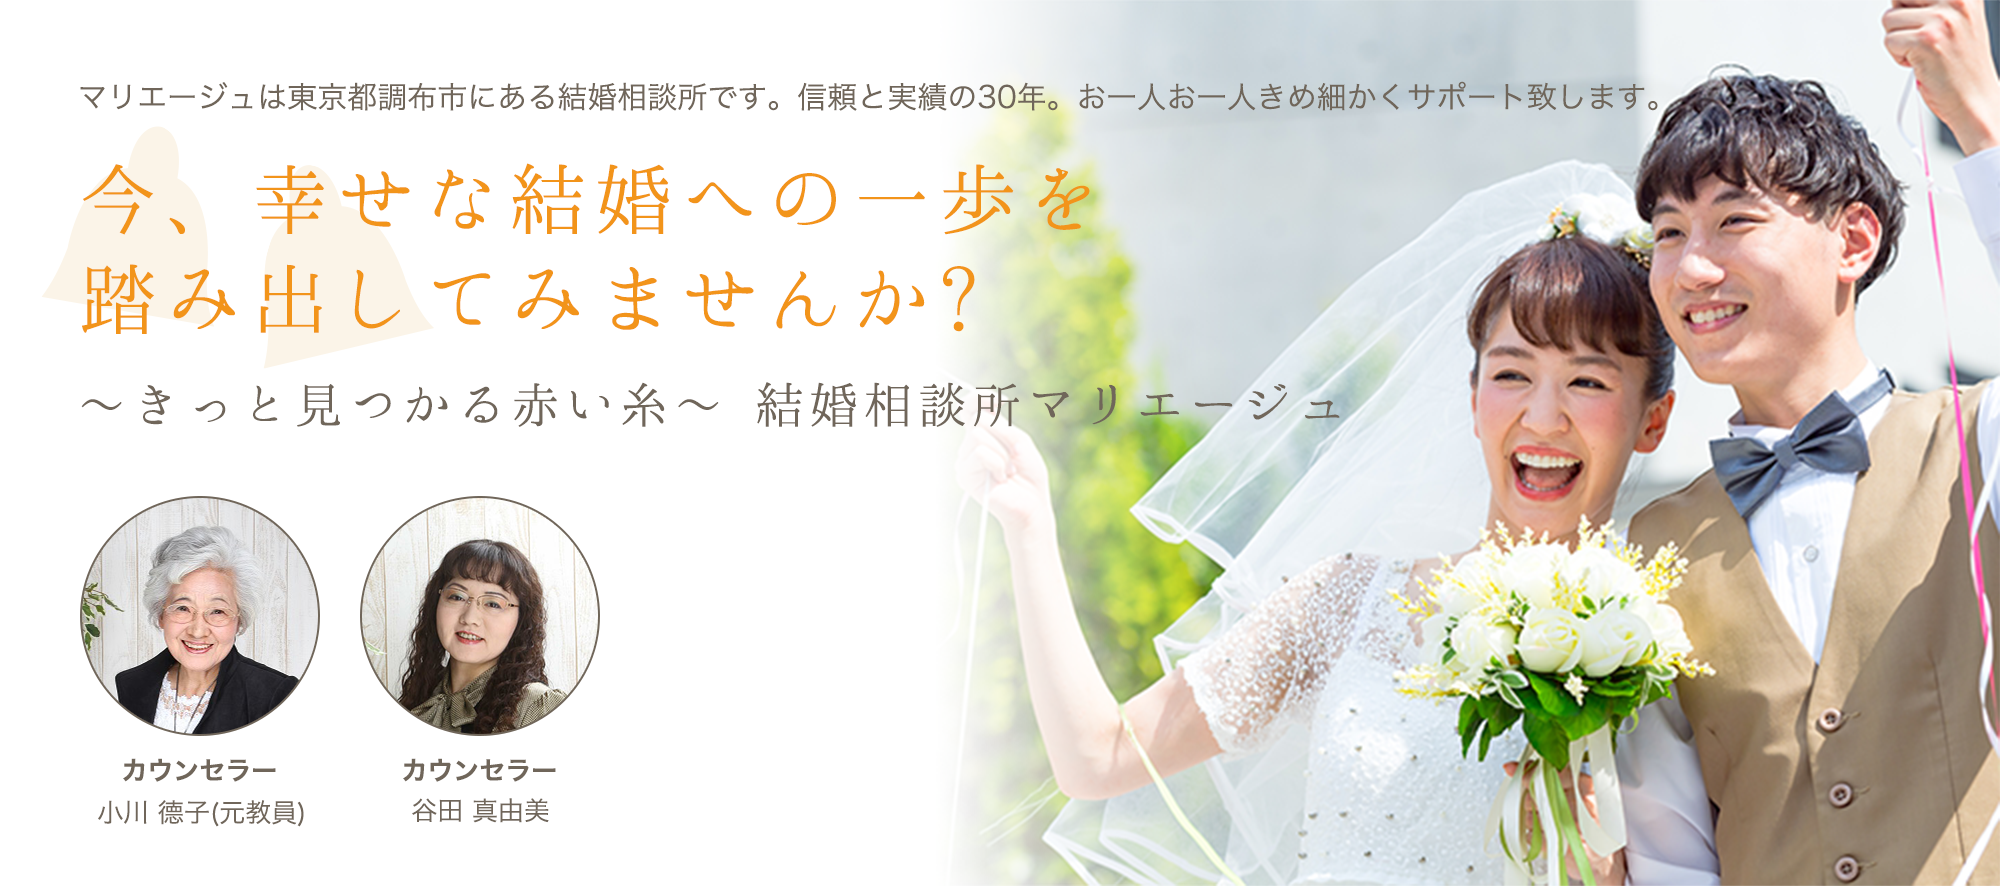 マリエージュは東京都調布市にある結婚相談所です。信頼と実績の30年。お一人お一人きめ細かくサポート致します。今、幸せな結婚への一歩を踏み出してみませんか?〜きっと見つかる赤い糸〜結婚相談所マリエージュ